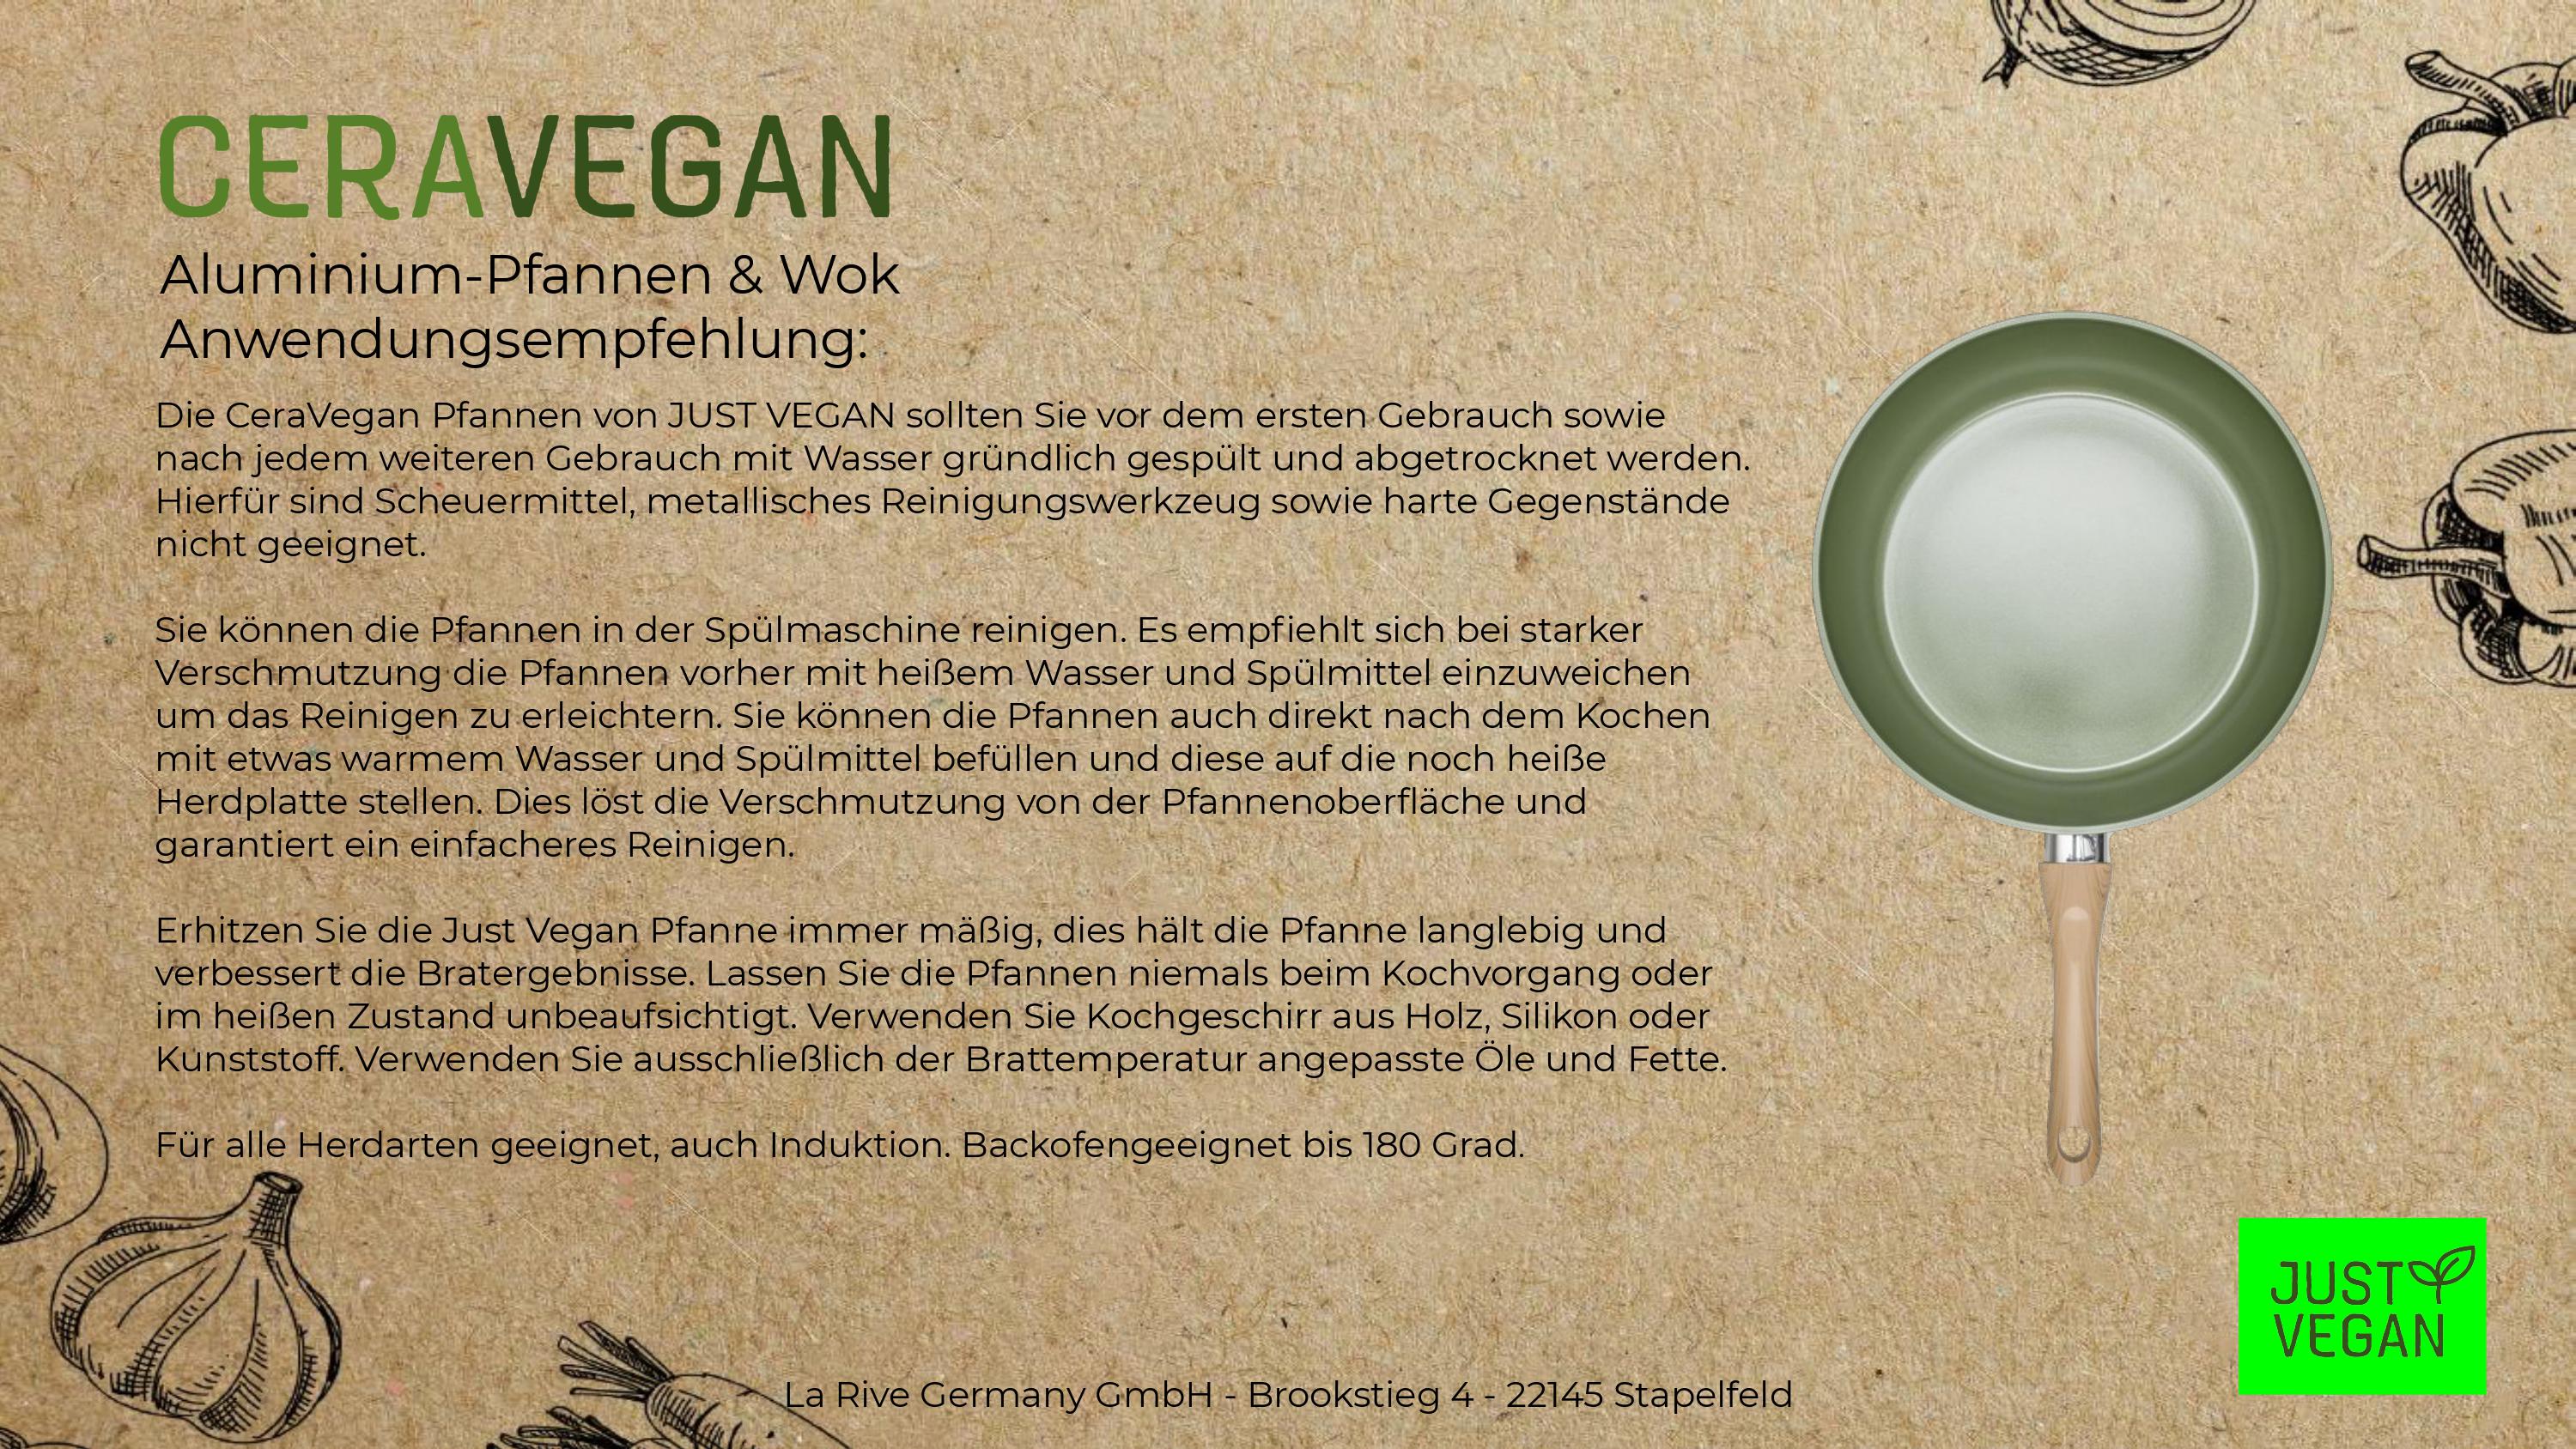 JUST VEGAN - CeraVegan Wok, mit pflanzlicher Keramik-Antihaftbeschichtung  auf Basis von Avocado-Öl –